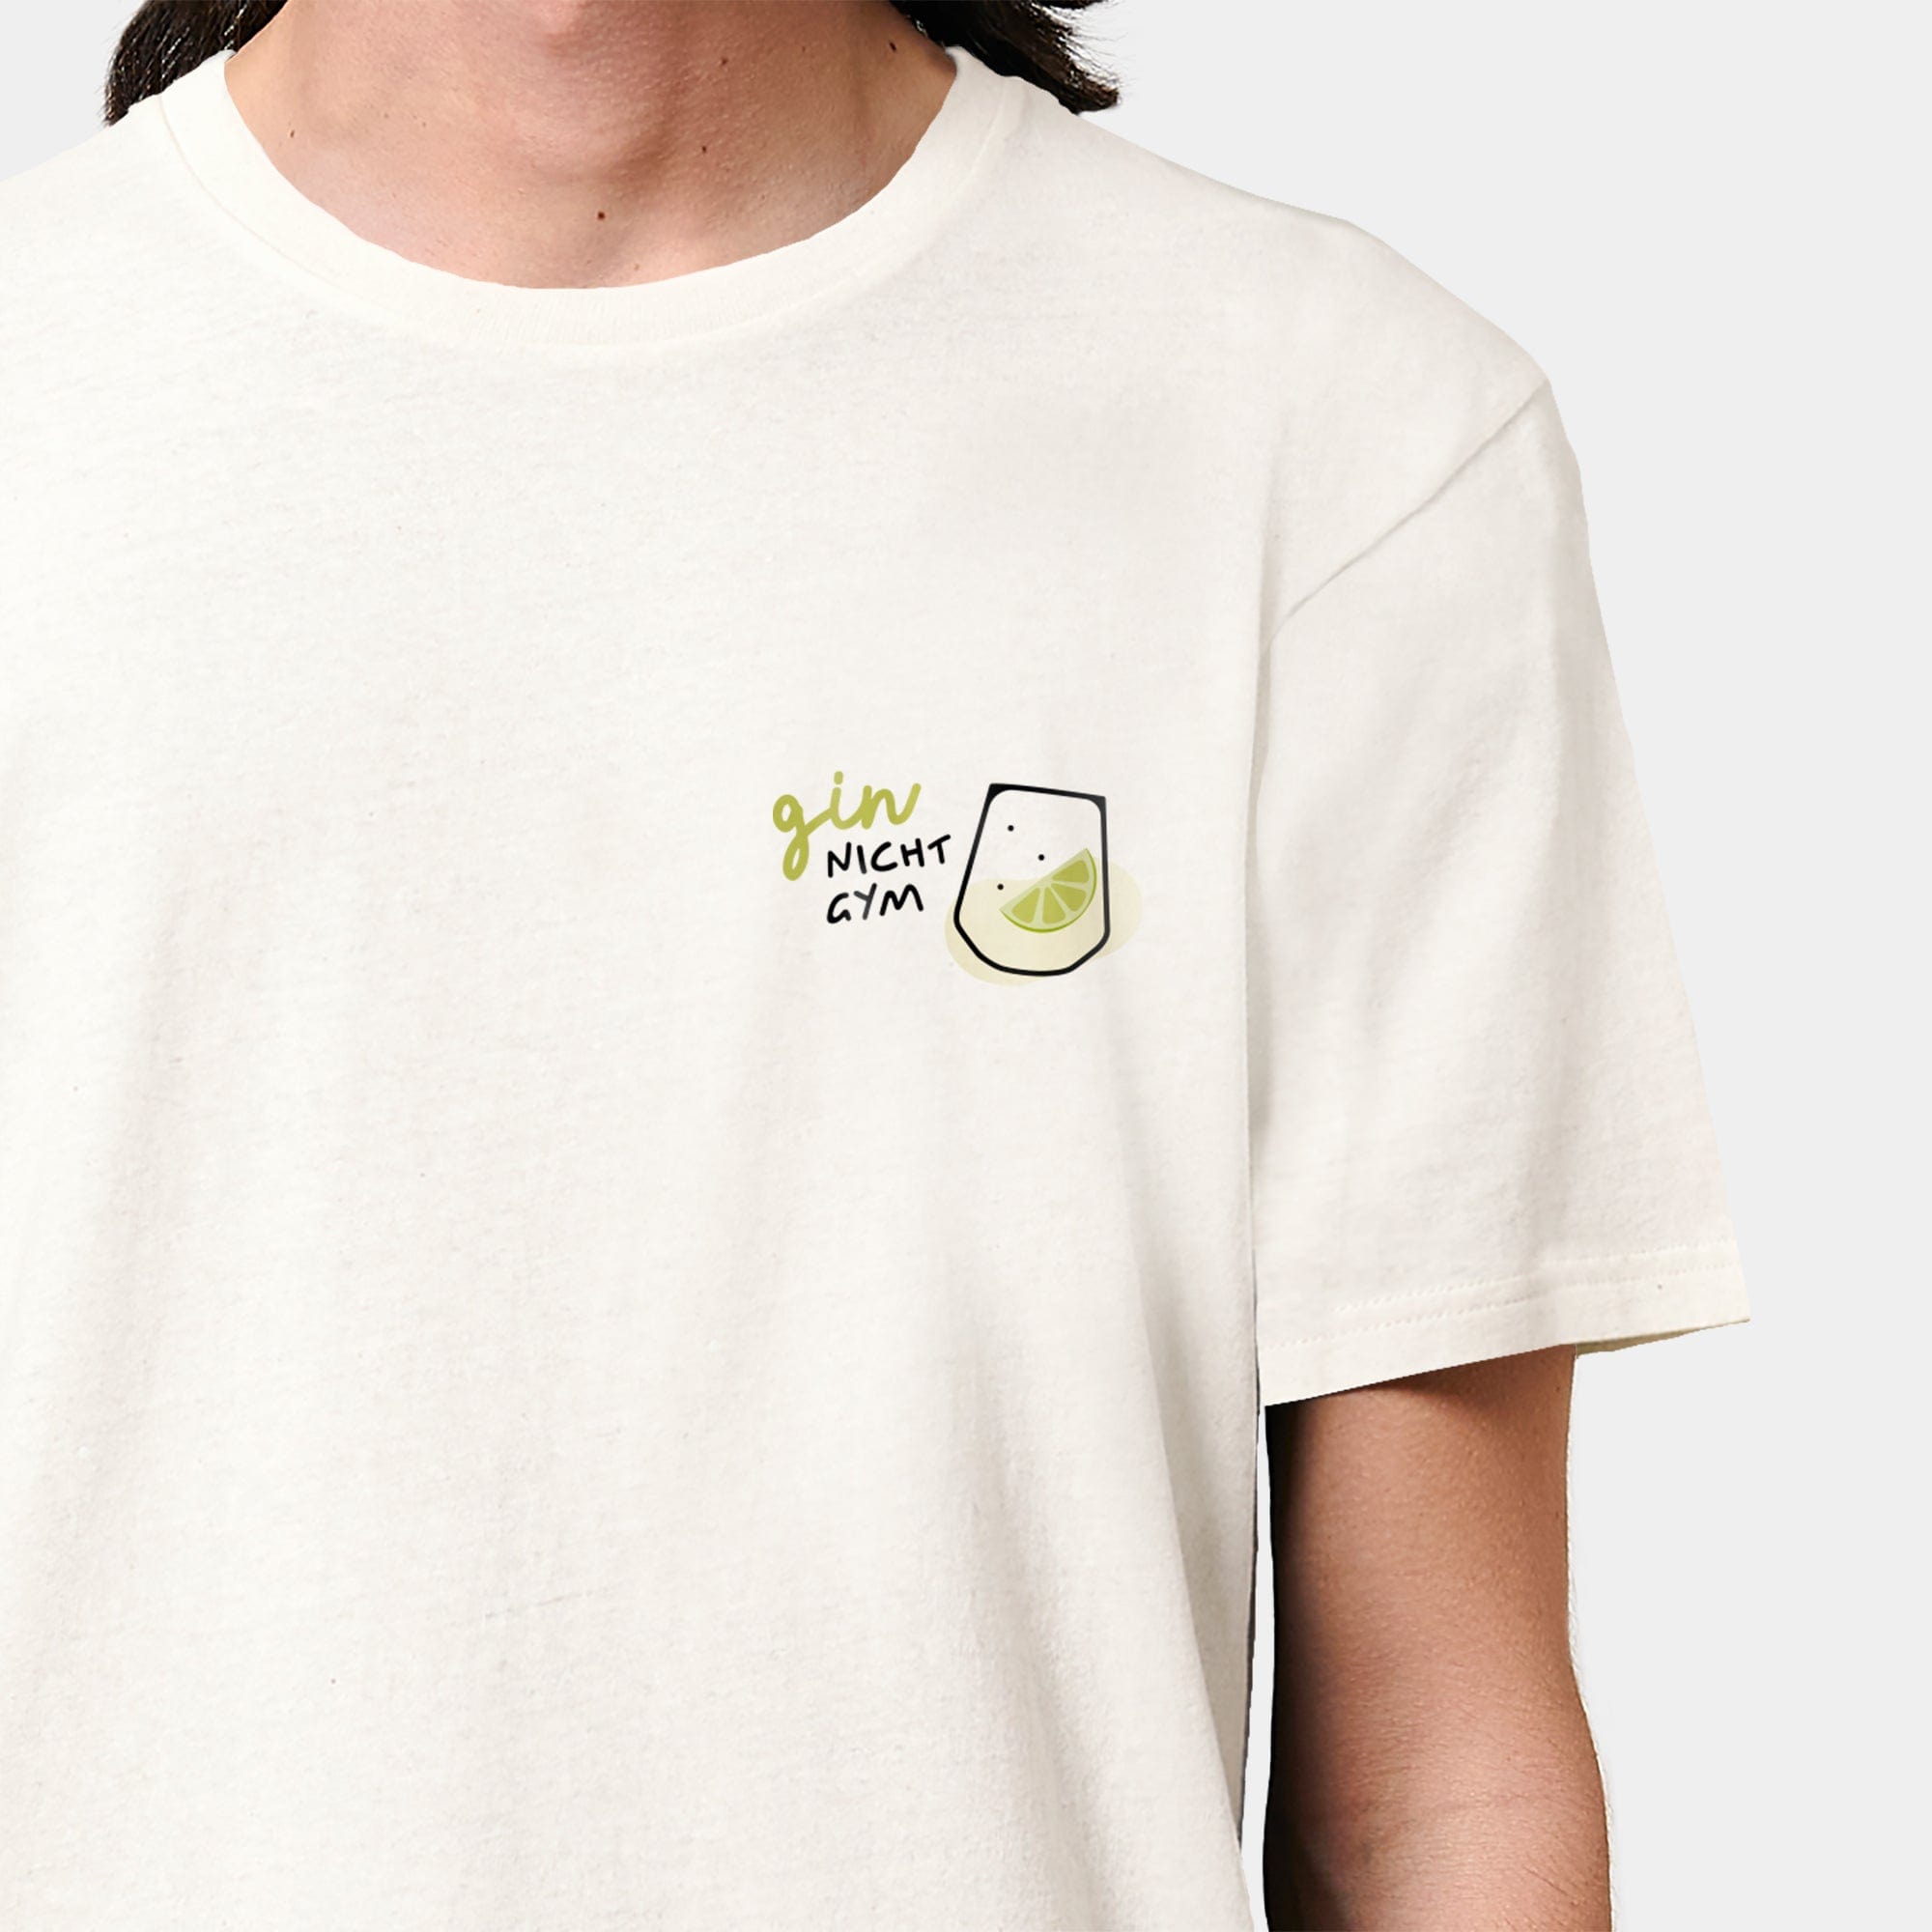 HEITER & LÄSSIG T-Shirt "GIN, nicht GYM!" S / RE-weiß - aus nachhaltiger und fairer Produktion